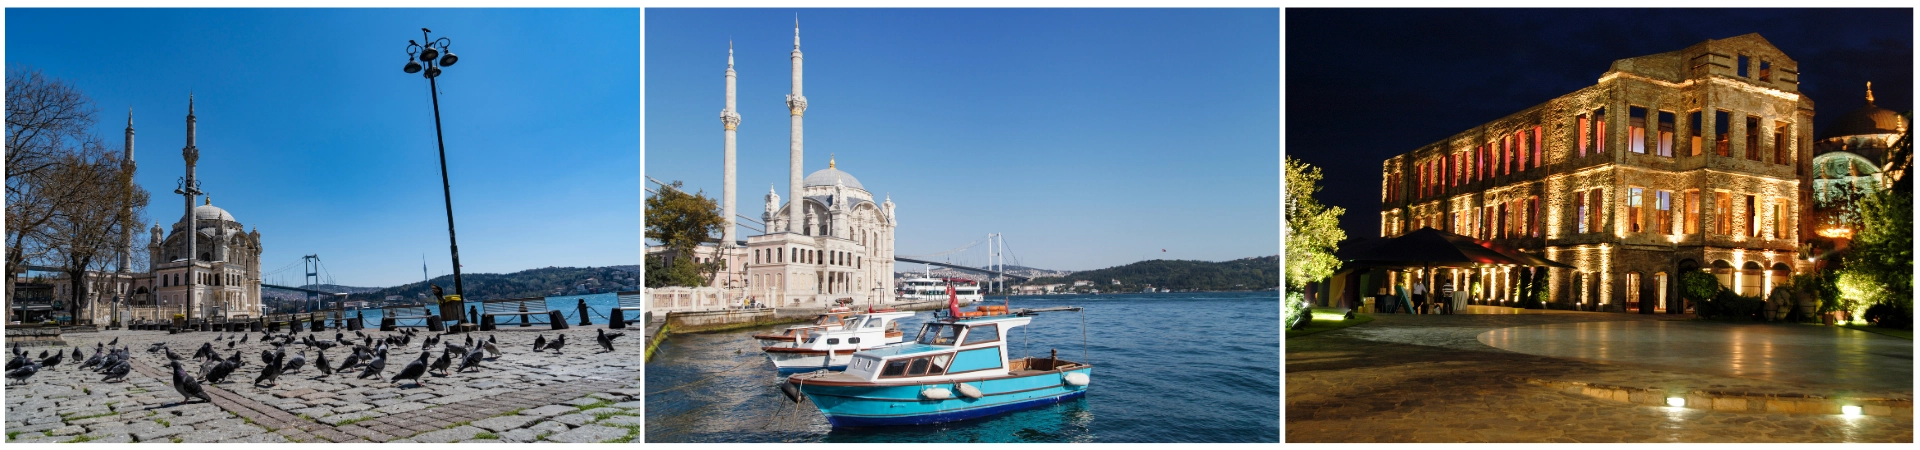 Ortaköy-Moschee und Audioguide-Tour durch das Viertel